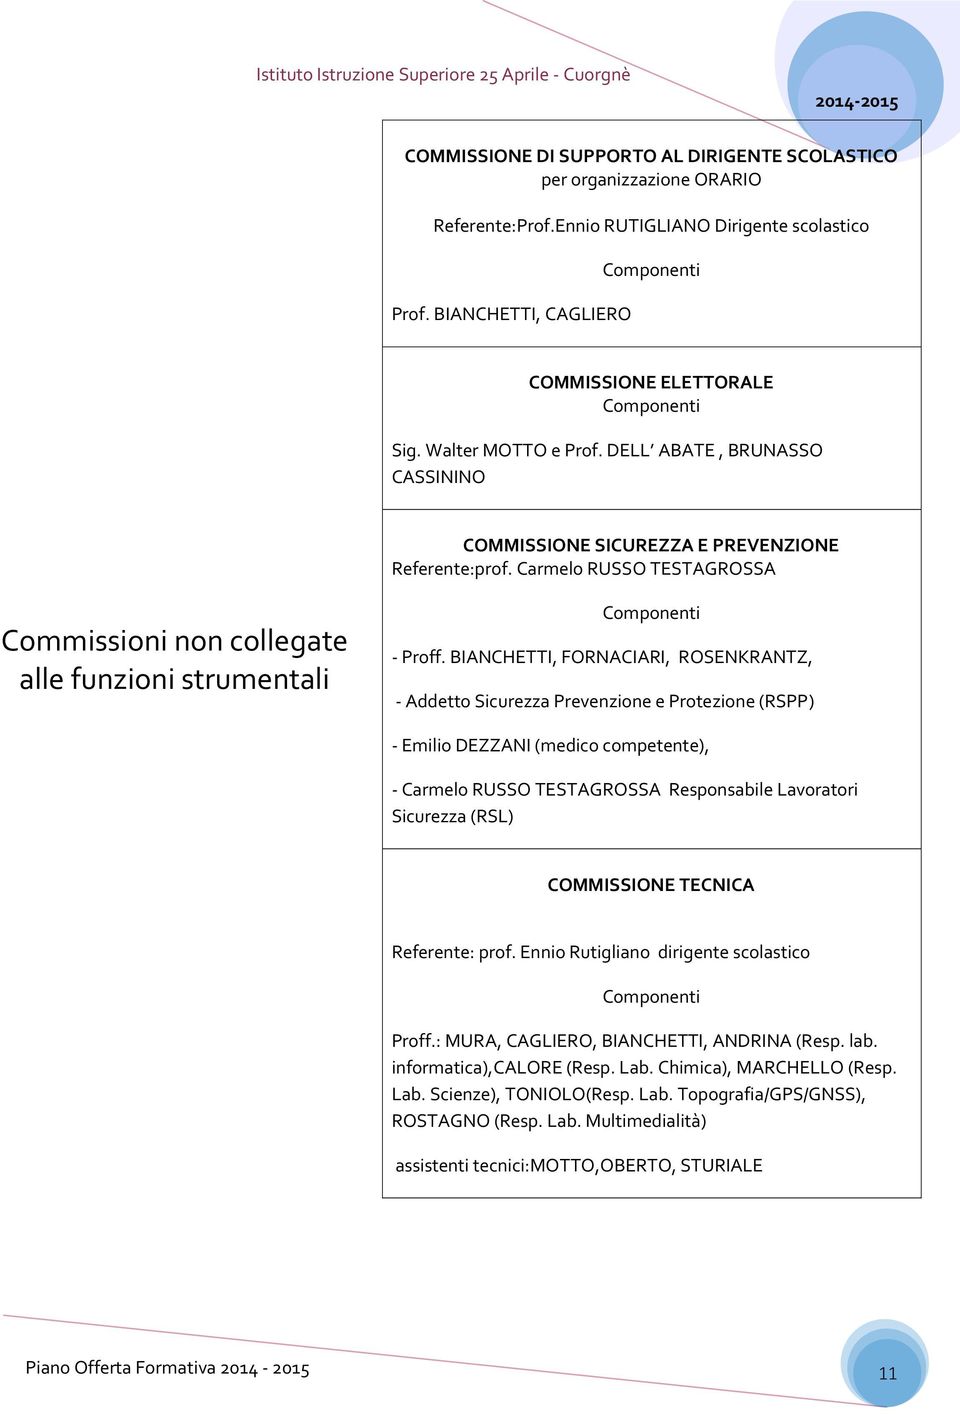 Carmelo RUSSO TESTAGROSSA Commissioni non collegate alle funzioni strumentali Componenti - Proff.